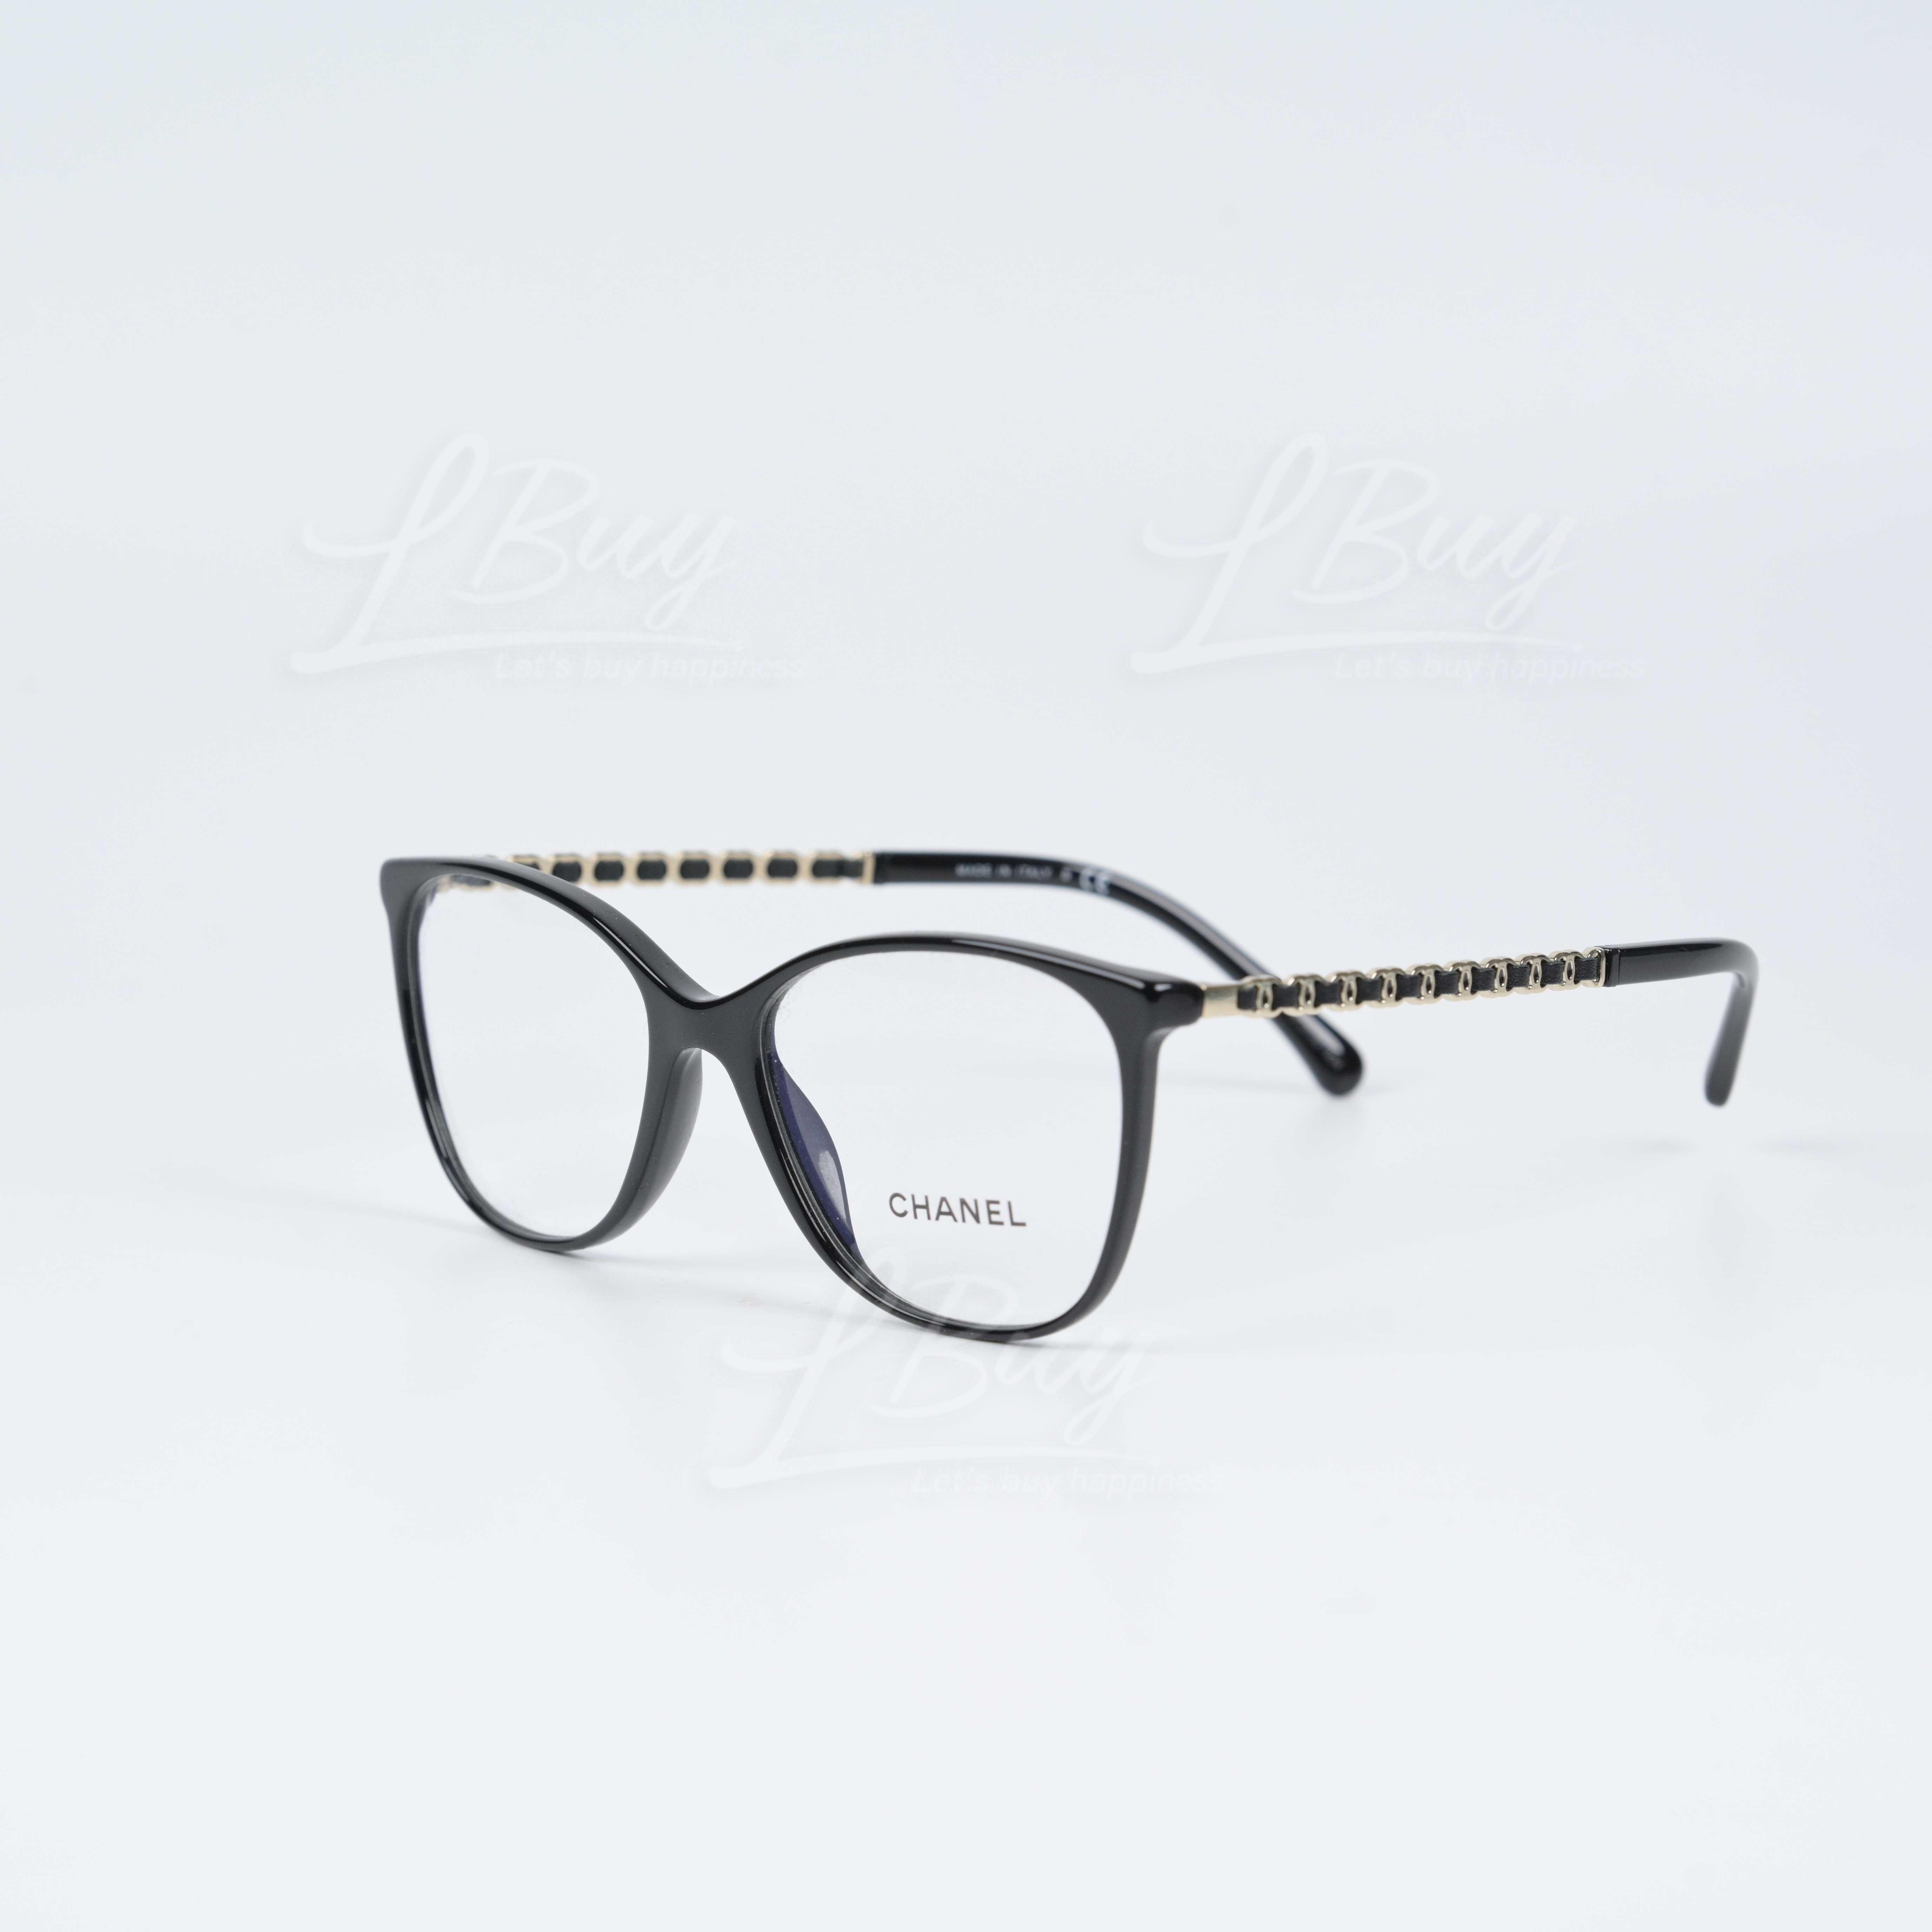 香奈儿: Chanel 永恒经典皮穿链带方形平光眼镜-商品详情| LBuy